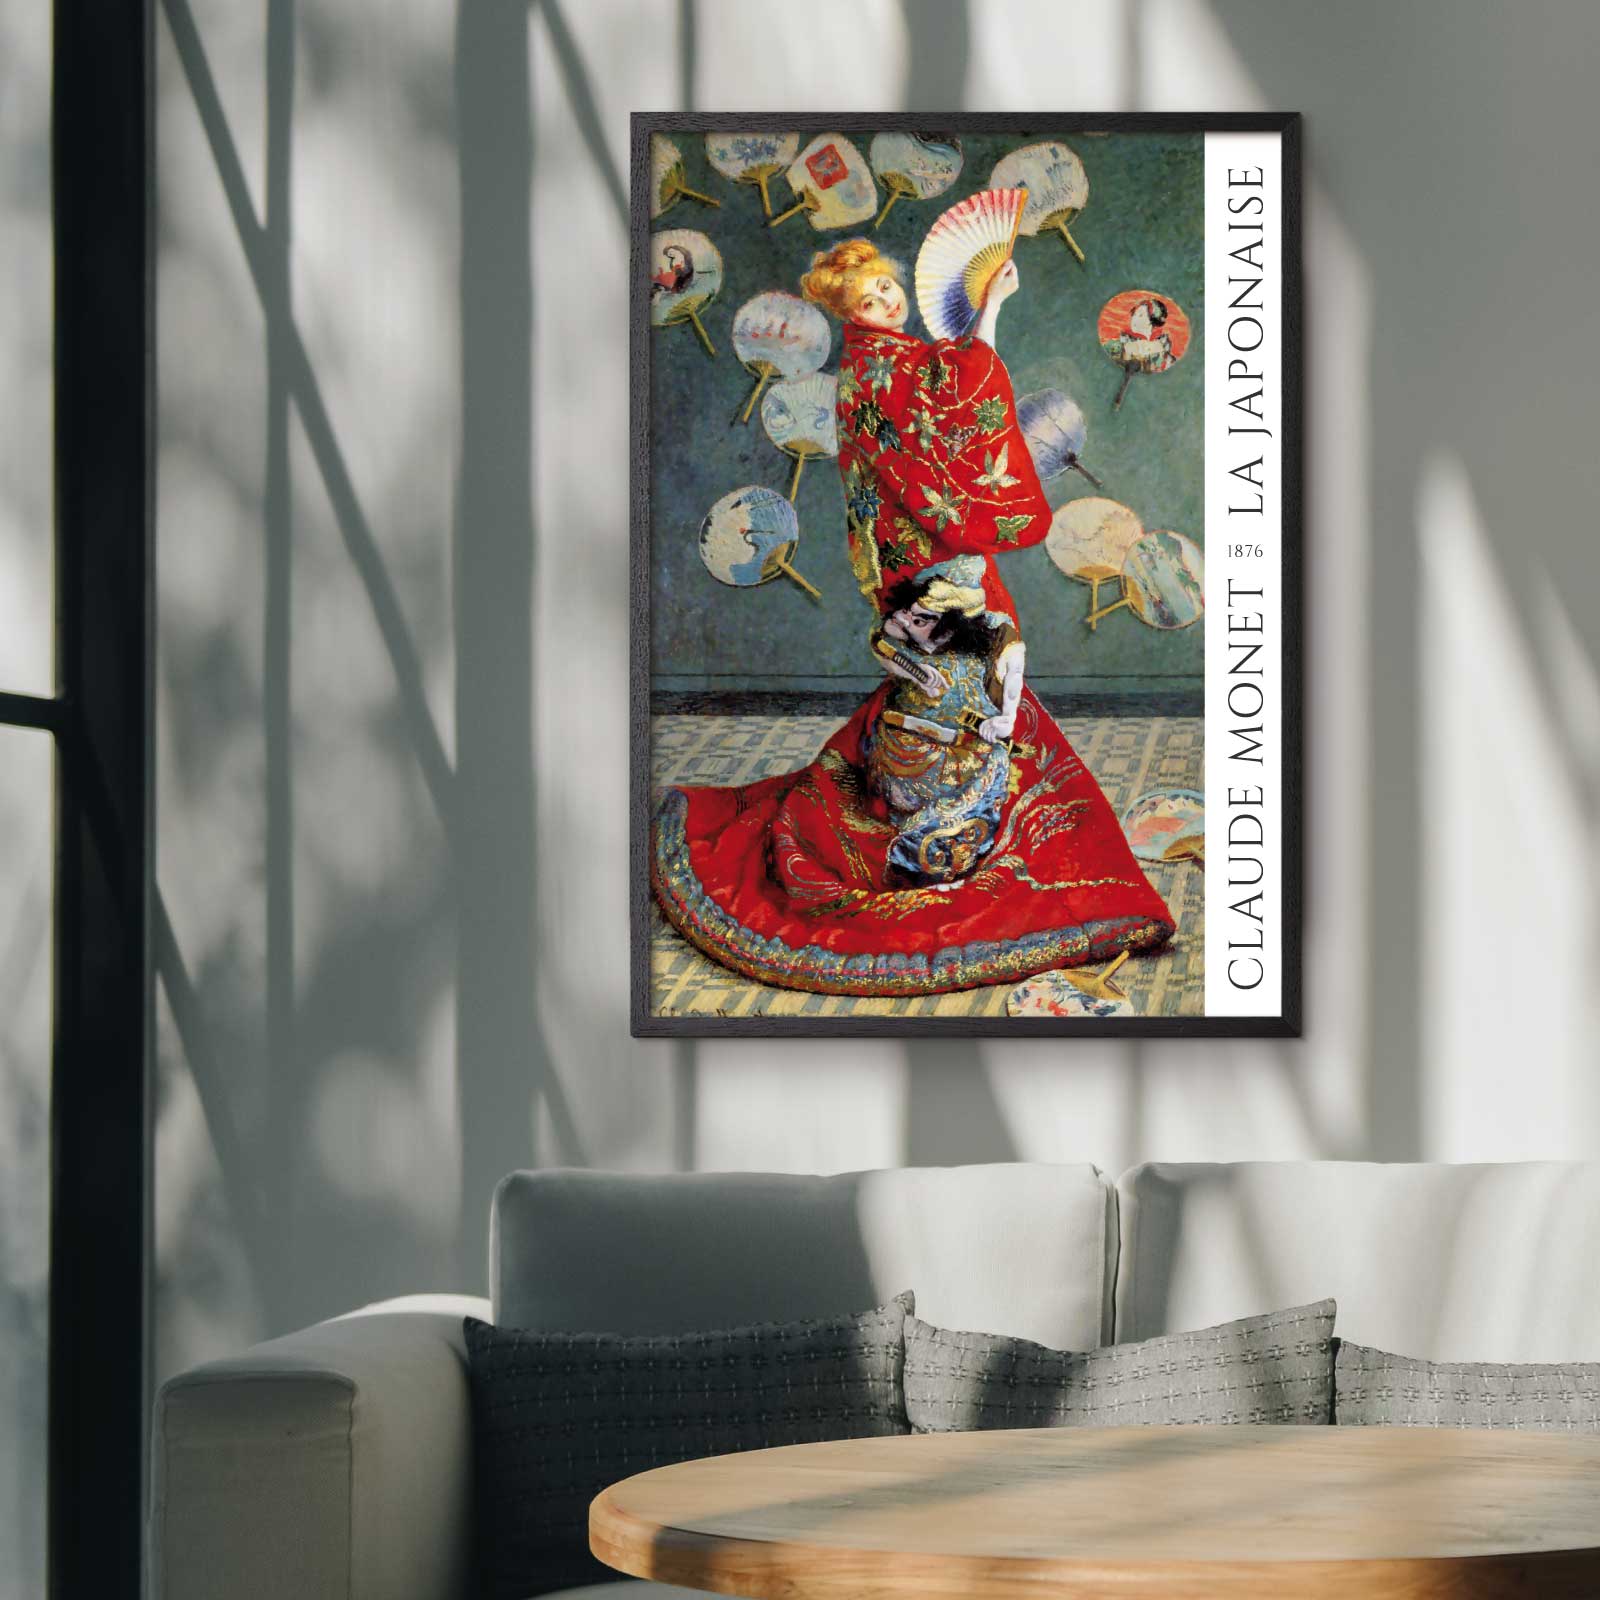 Art poster featuring Claude Monet "La Japonaise"